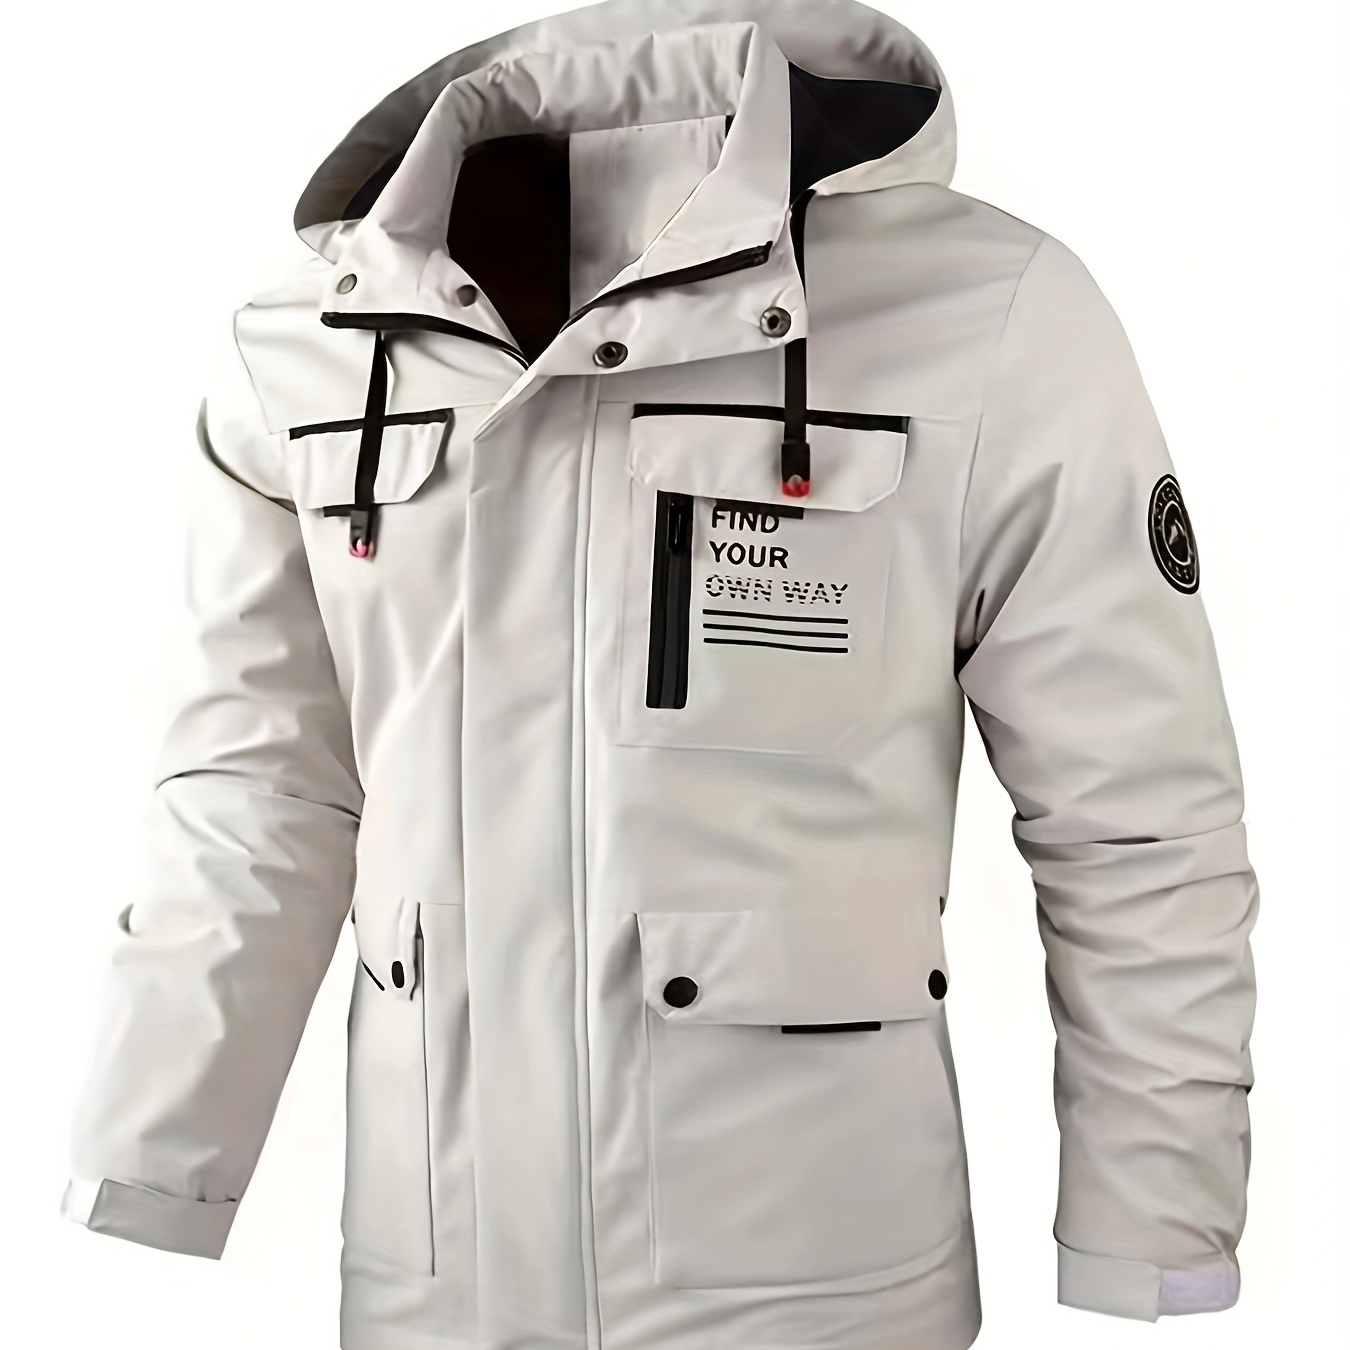 

Plus Size Men's Spring Fall Windbreaker, Loose Zipper Cardigan Hooded Jacket, Outdoor Waterproof Sports Jacket Coat With Multi-pocket